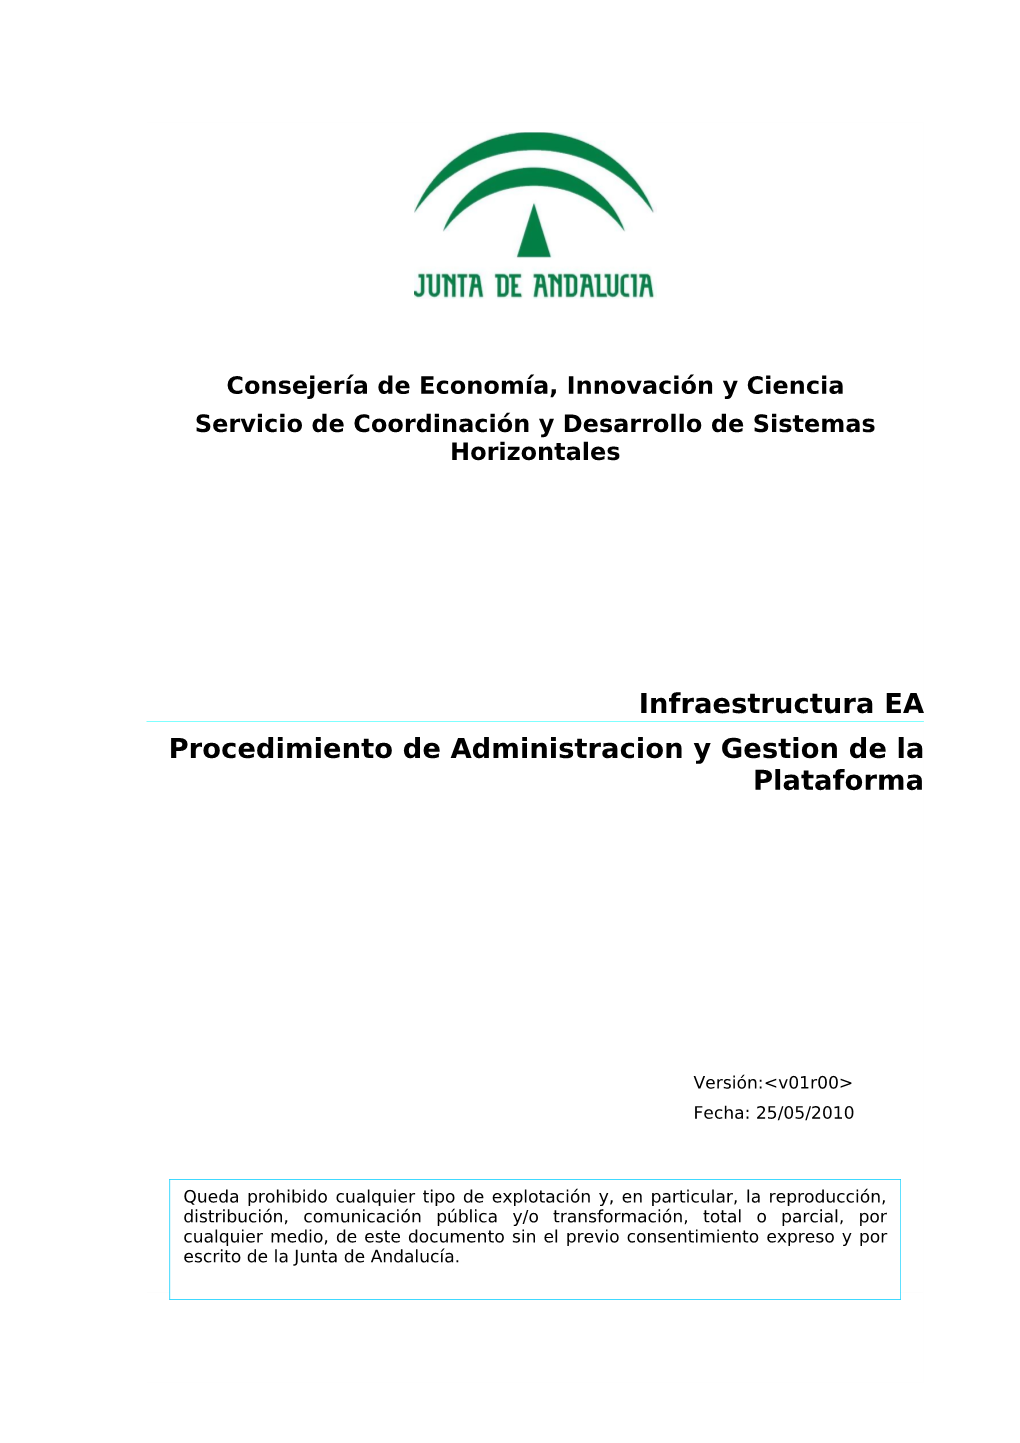 Infraestructura EA Procedimiento De Administracion Y Gestion De La Plataforma